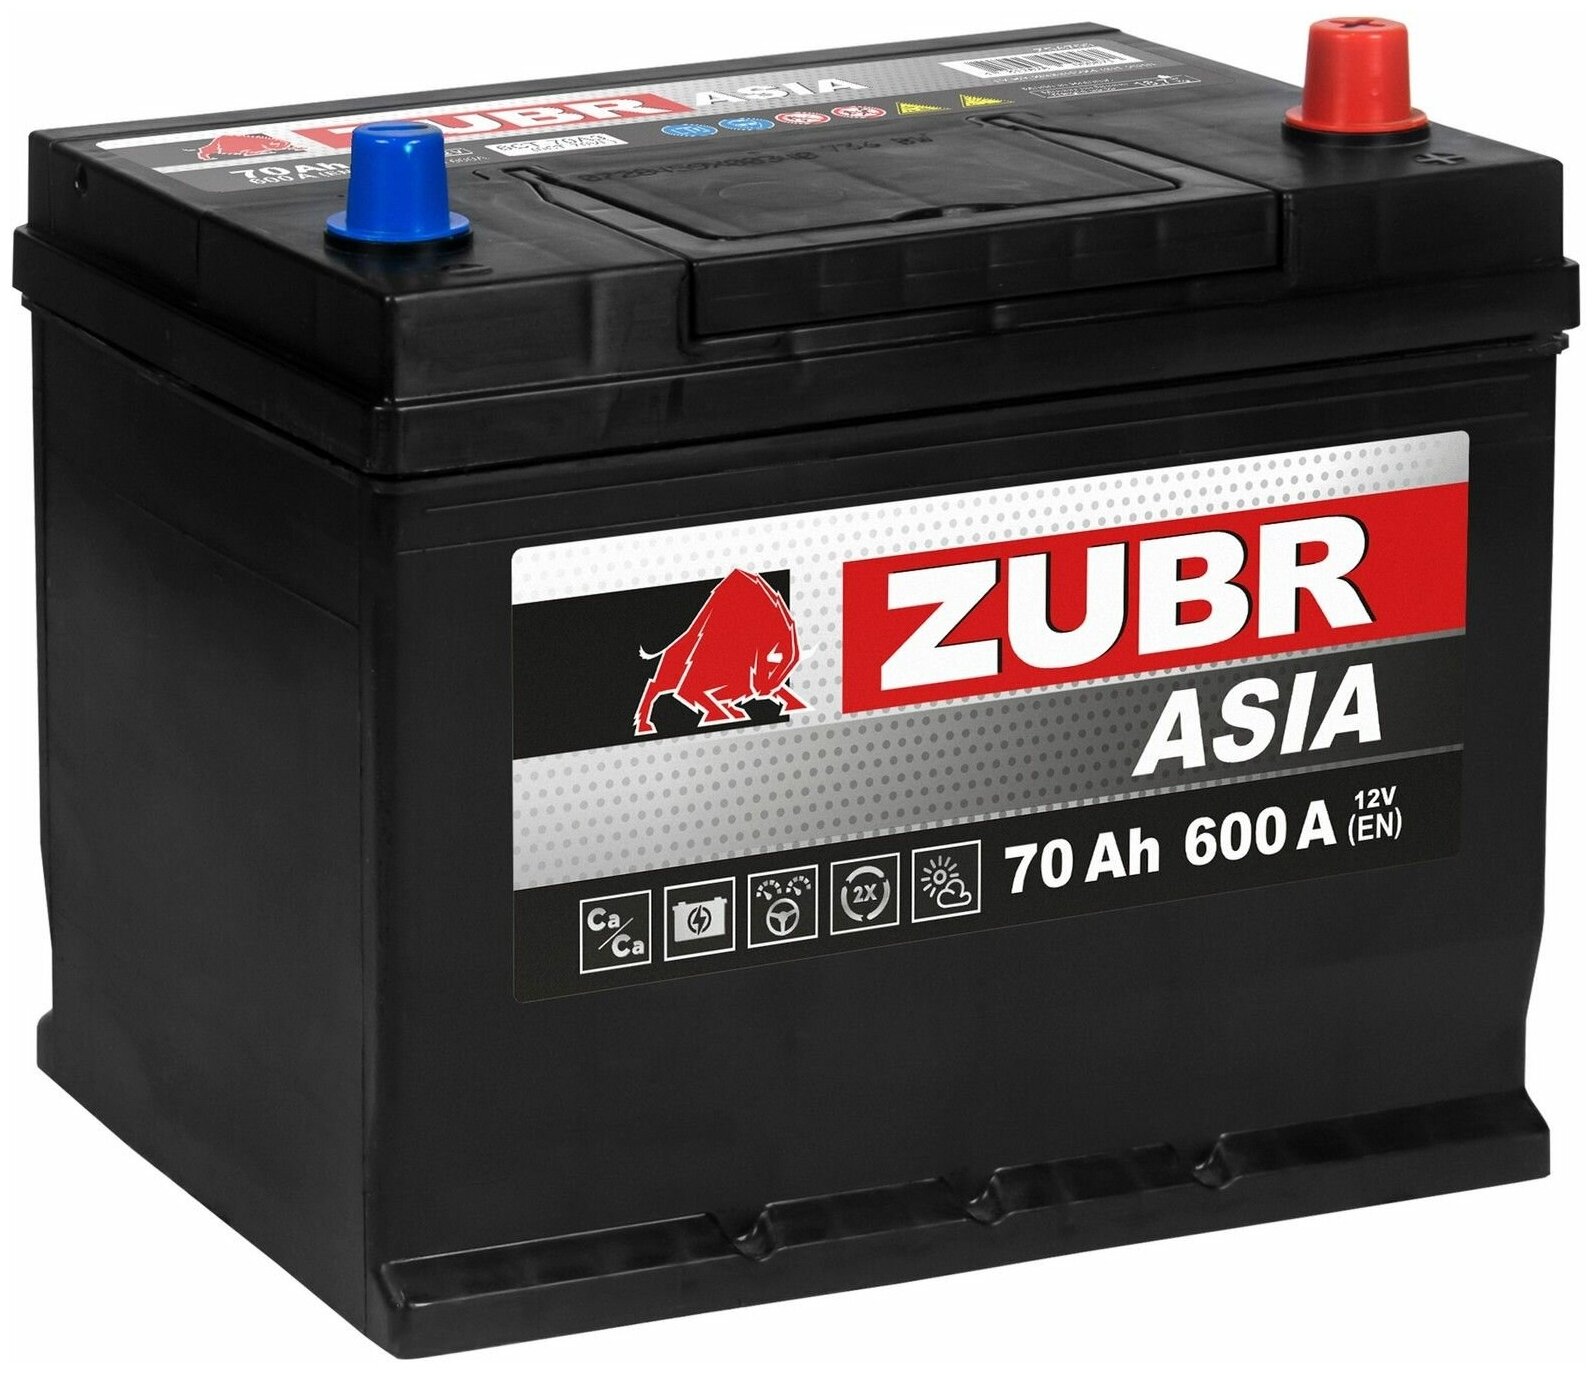 Аккумулятор автомобильный ZUBR Ultra Asia (нижний борт) 70 Ah 600 A обратная полярность 261x175x225